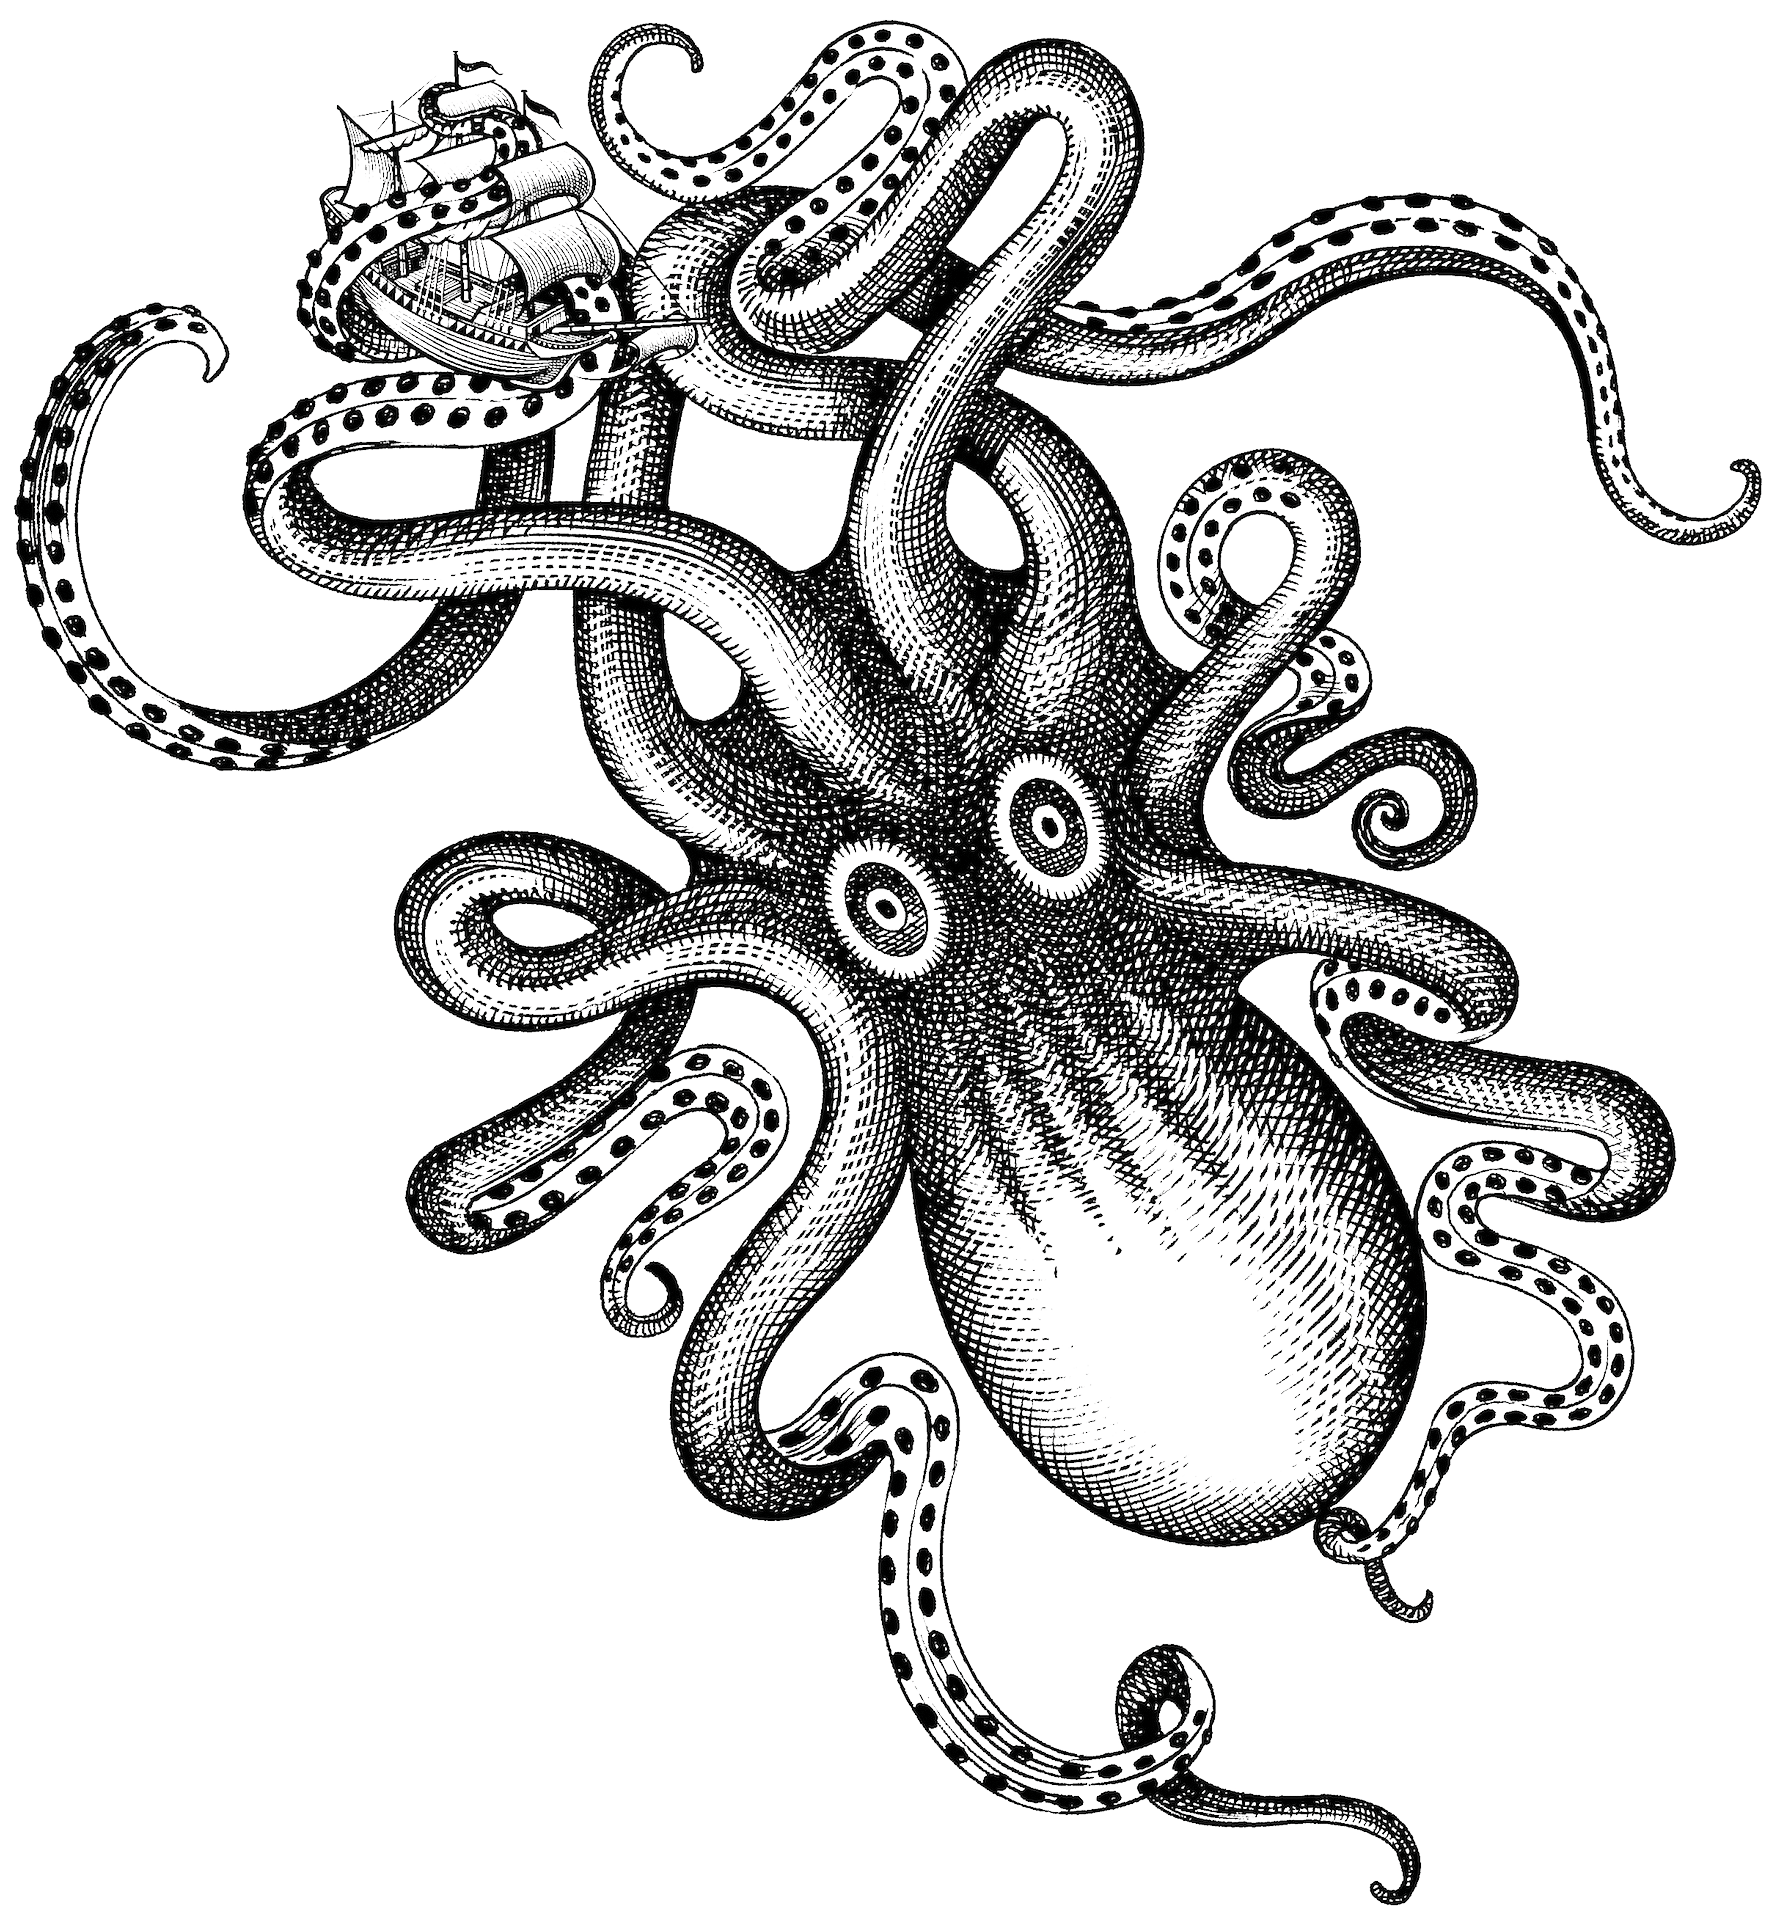 Kraken Illustration Free Transparent Png Download Pngkey | Images and ...